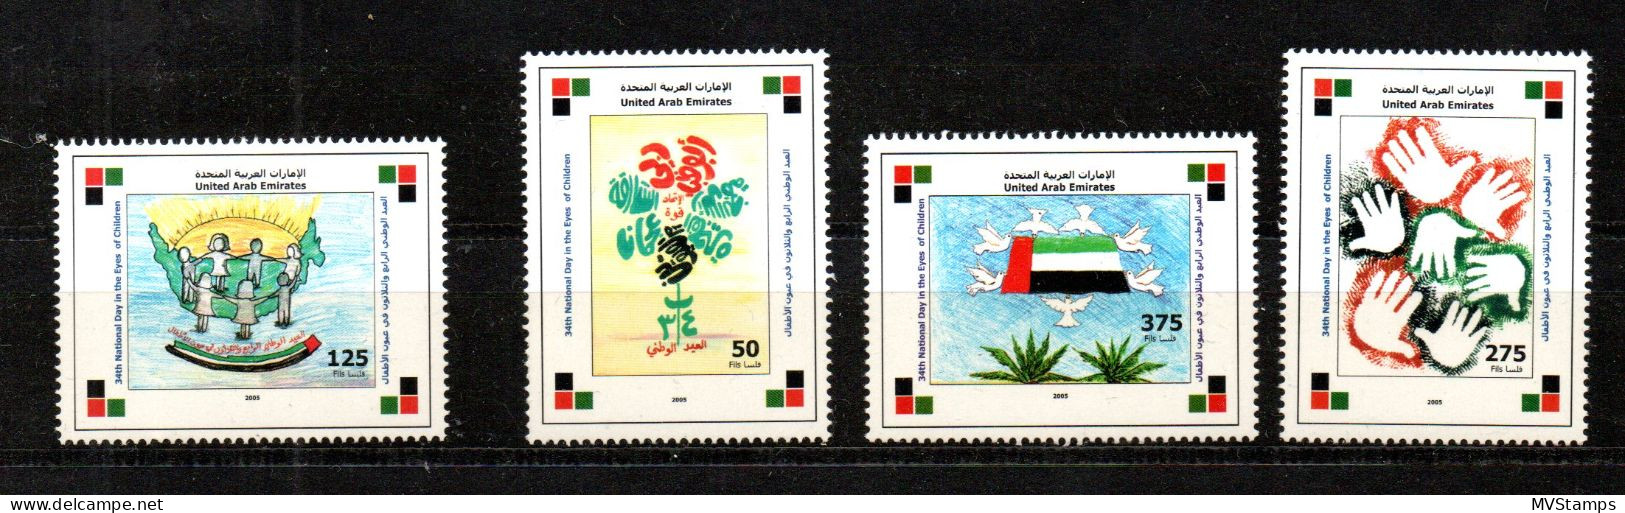 Vereinte Arab Emirates 2005 Satz 811/14 Kinderzeichnungen/Flagge Postfrisch - Ver. Arab. Emirate